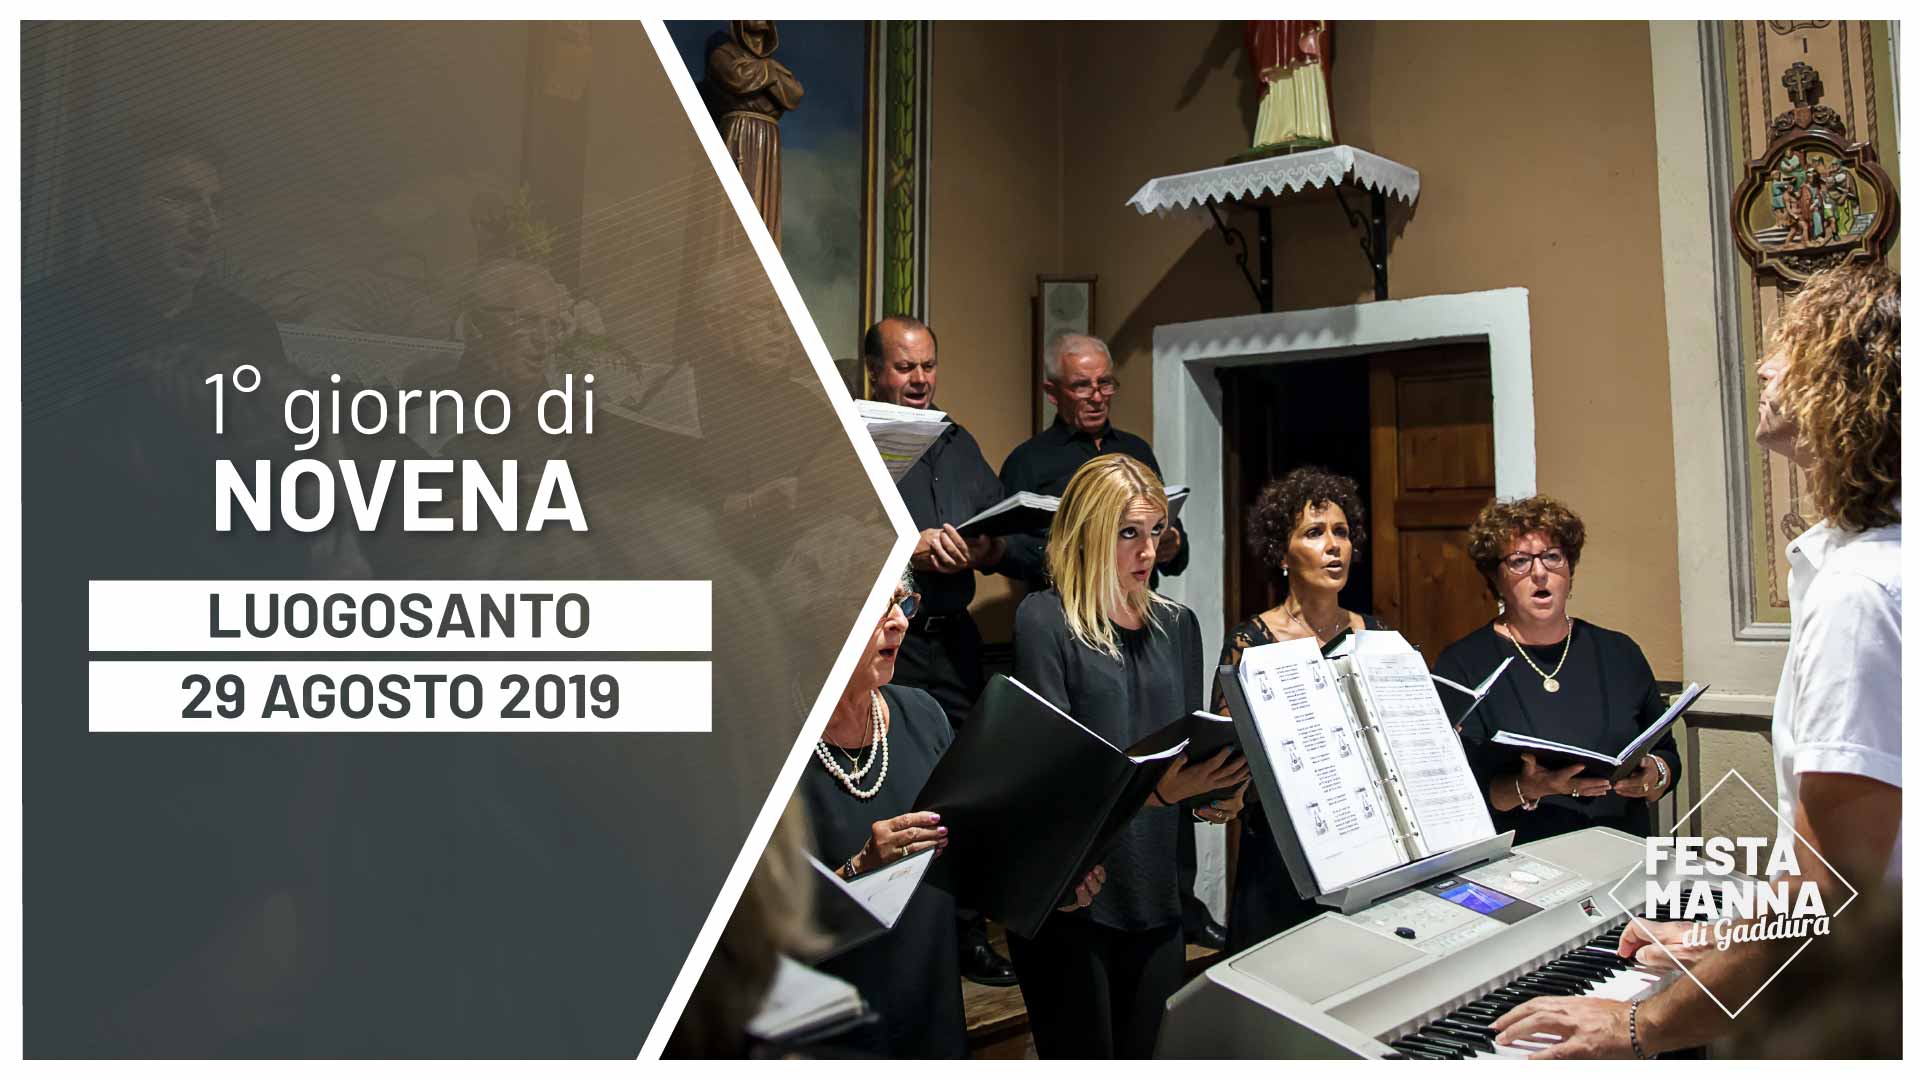 First day of the novena | Festa Manna di Gaddura 2019